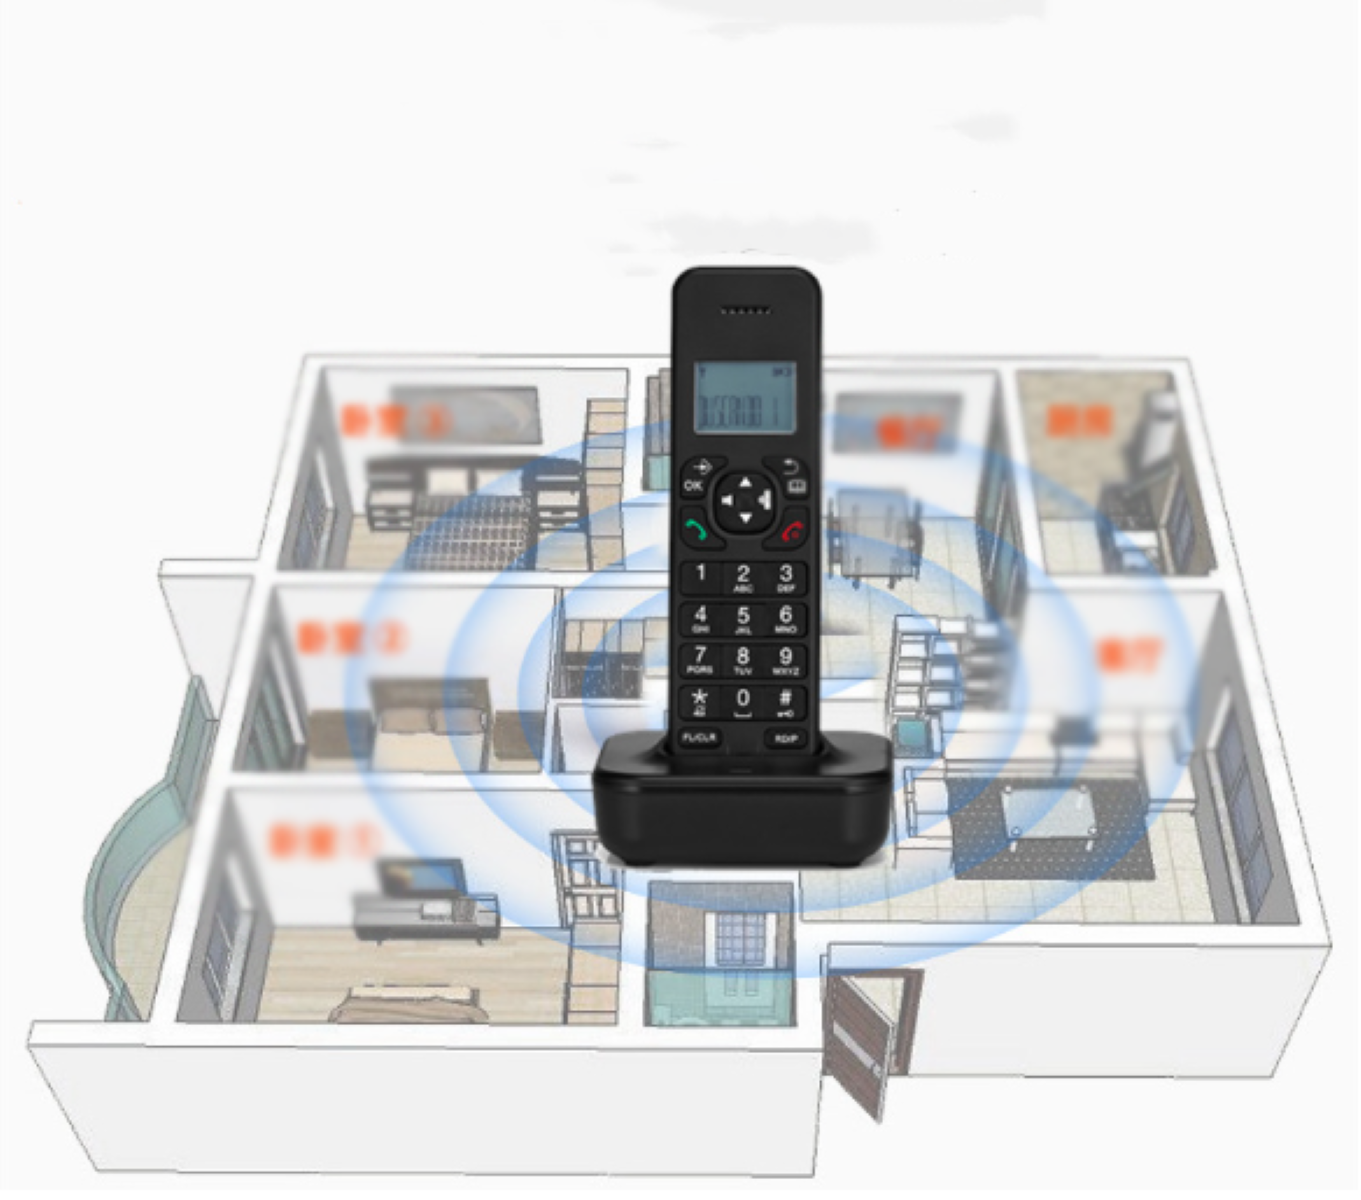 Schnurloses Telefon Klingellautstärke, Anti-Jamming-Kommunikationstechnologie - Schnurlose Handtelefone einstellbare LACAMAX D1102B